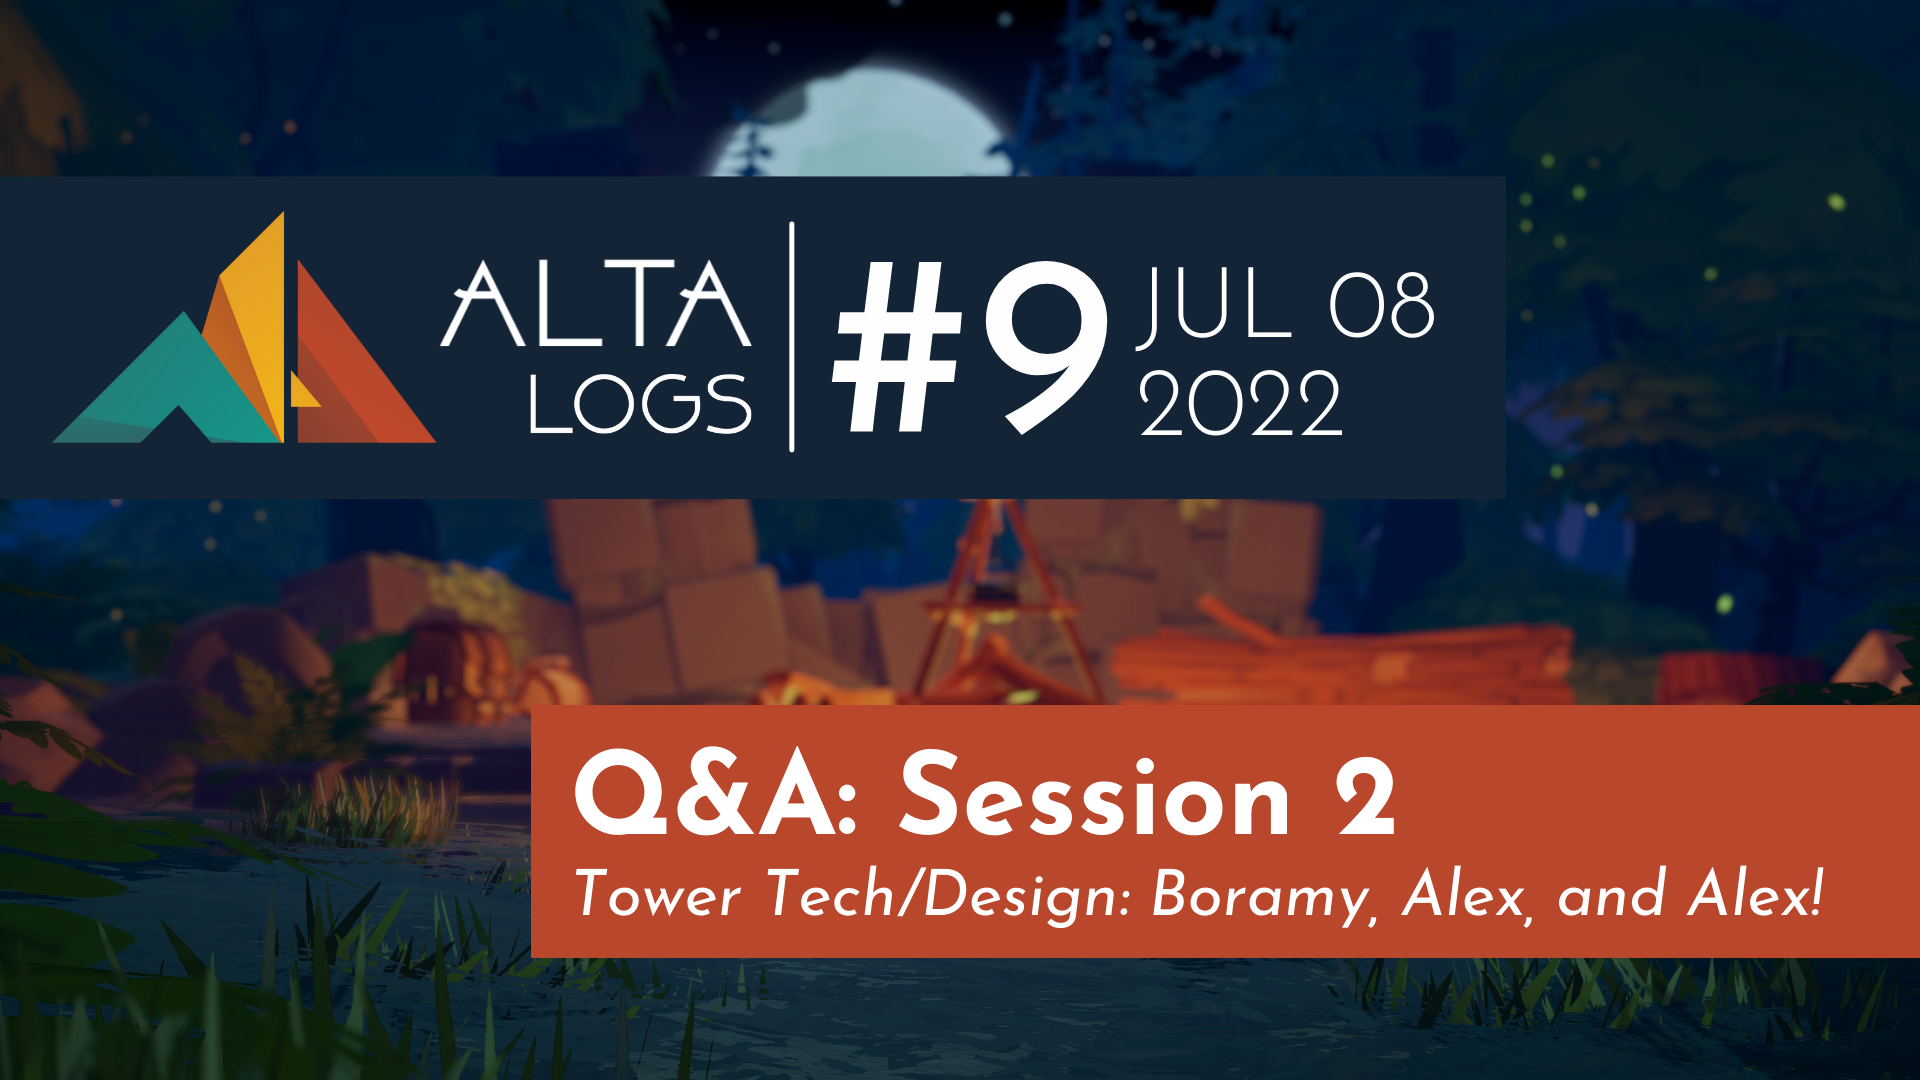 Alta Logs #9: Q&A Session 2